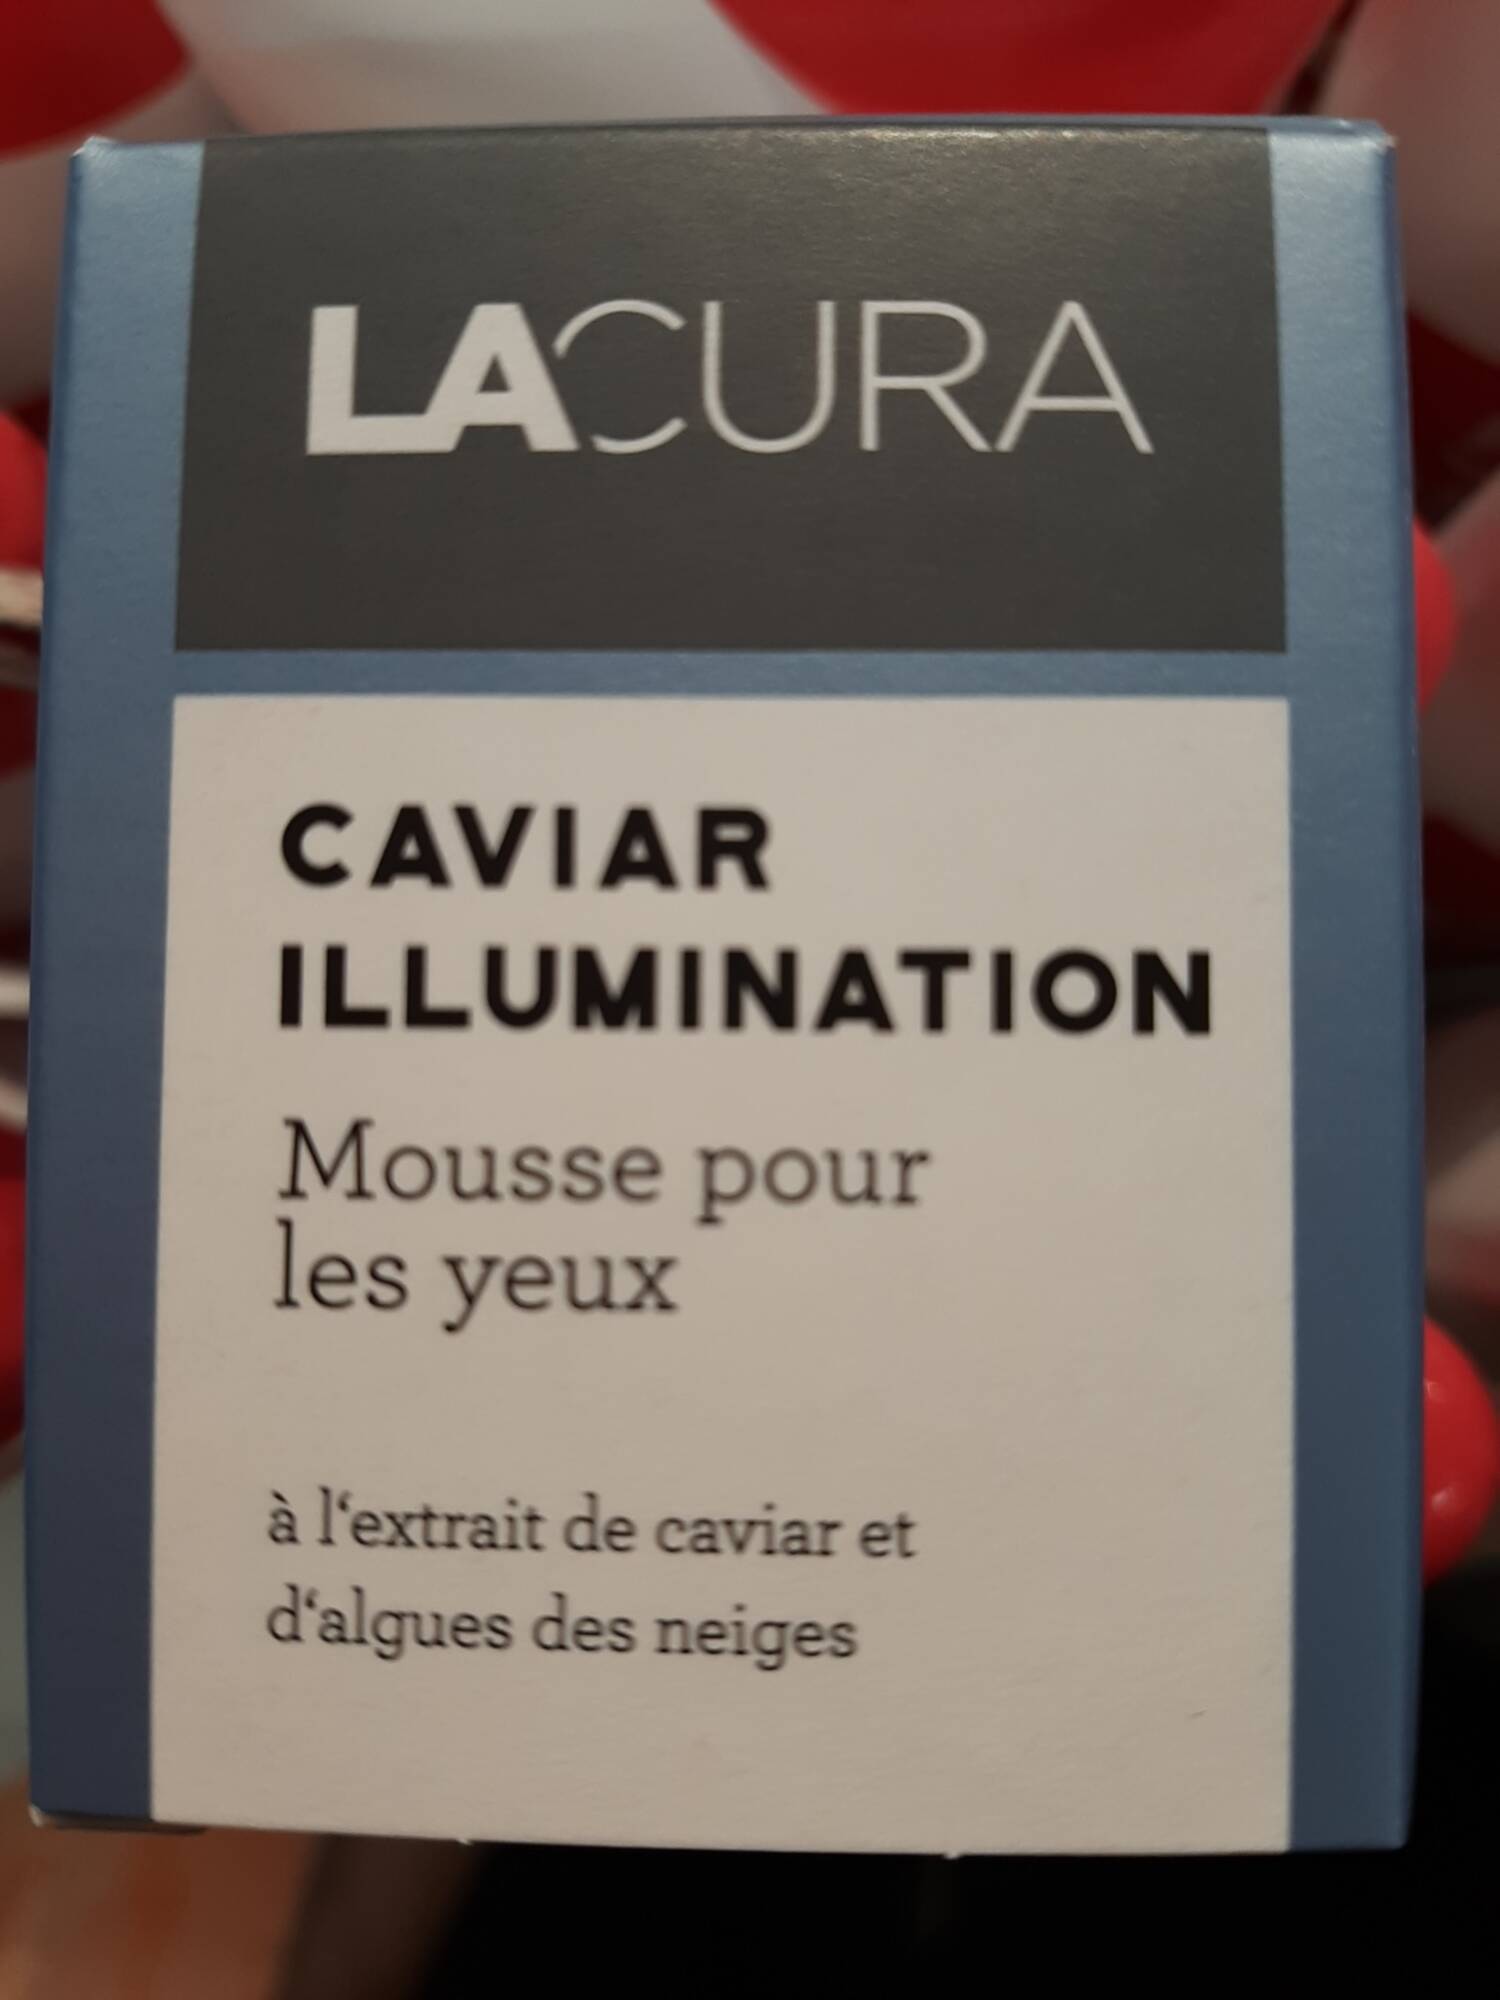 LACURA - Caviar illumination - Mousse pour les yeux